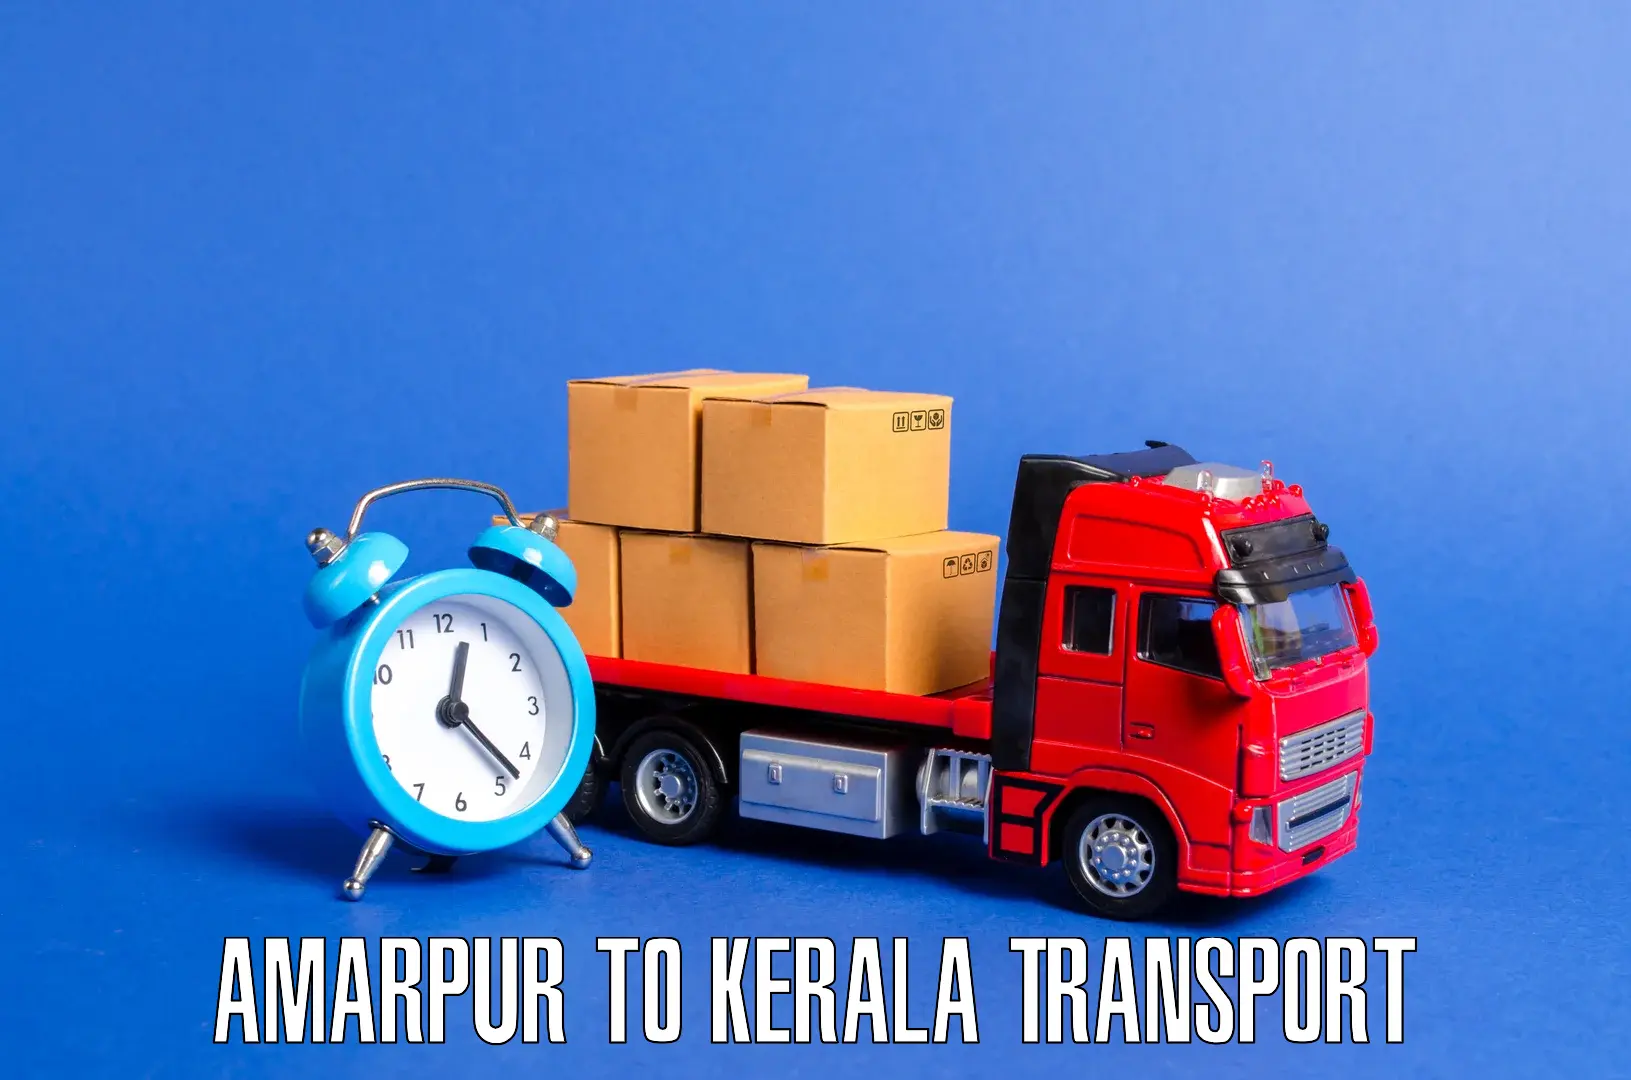 Nationwide transport services Amarpur to Mundakayam